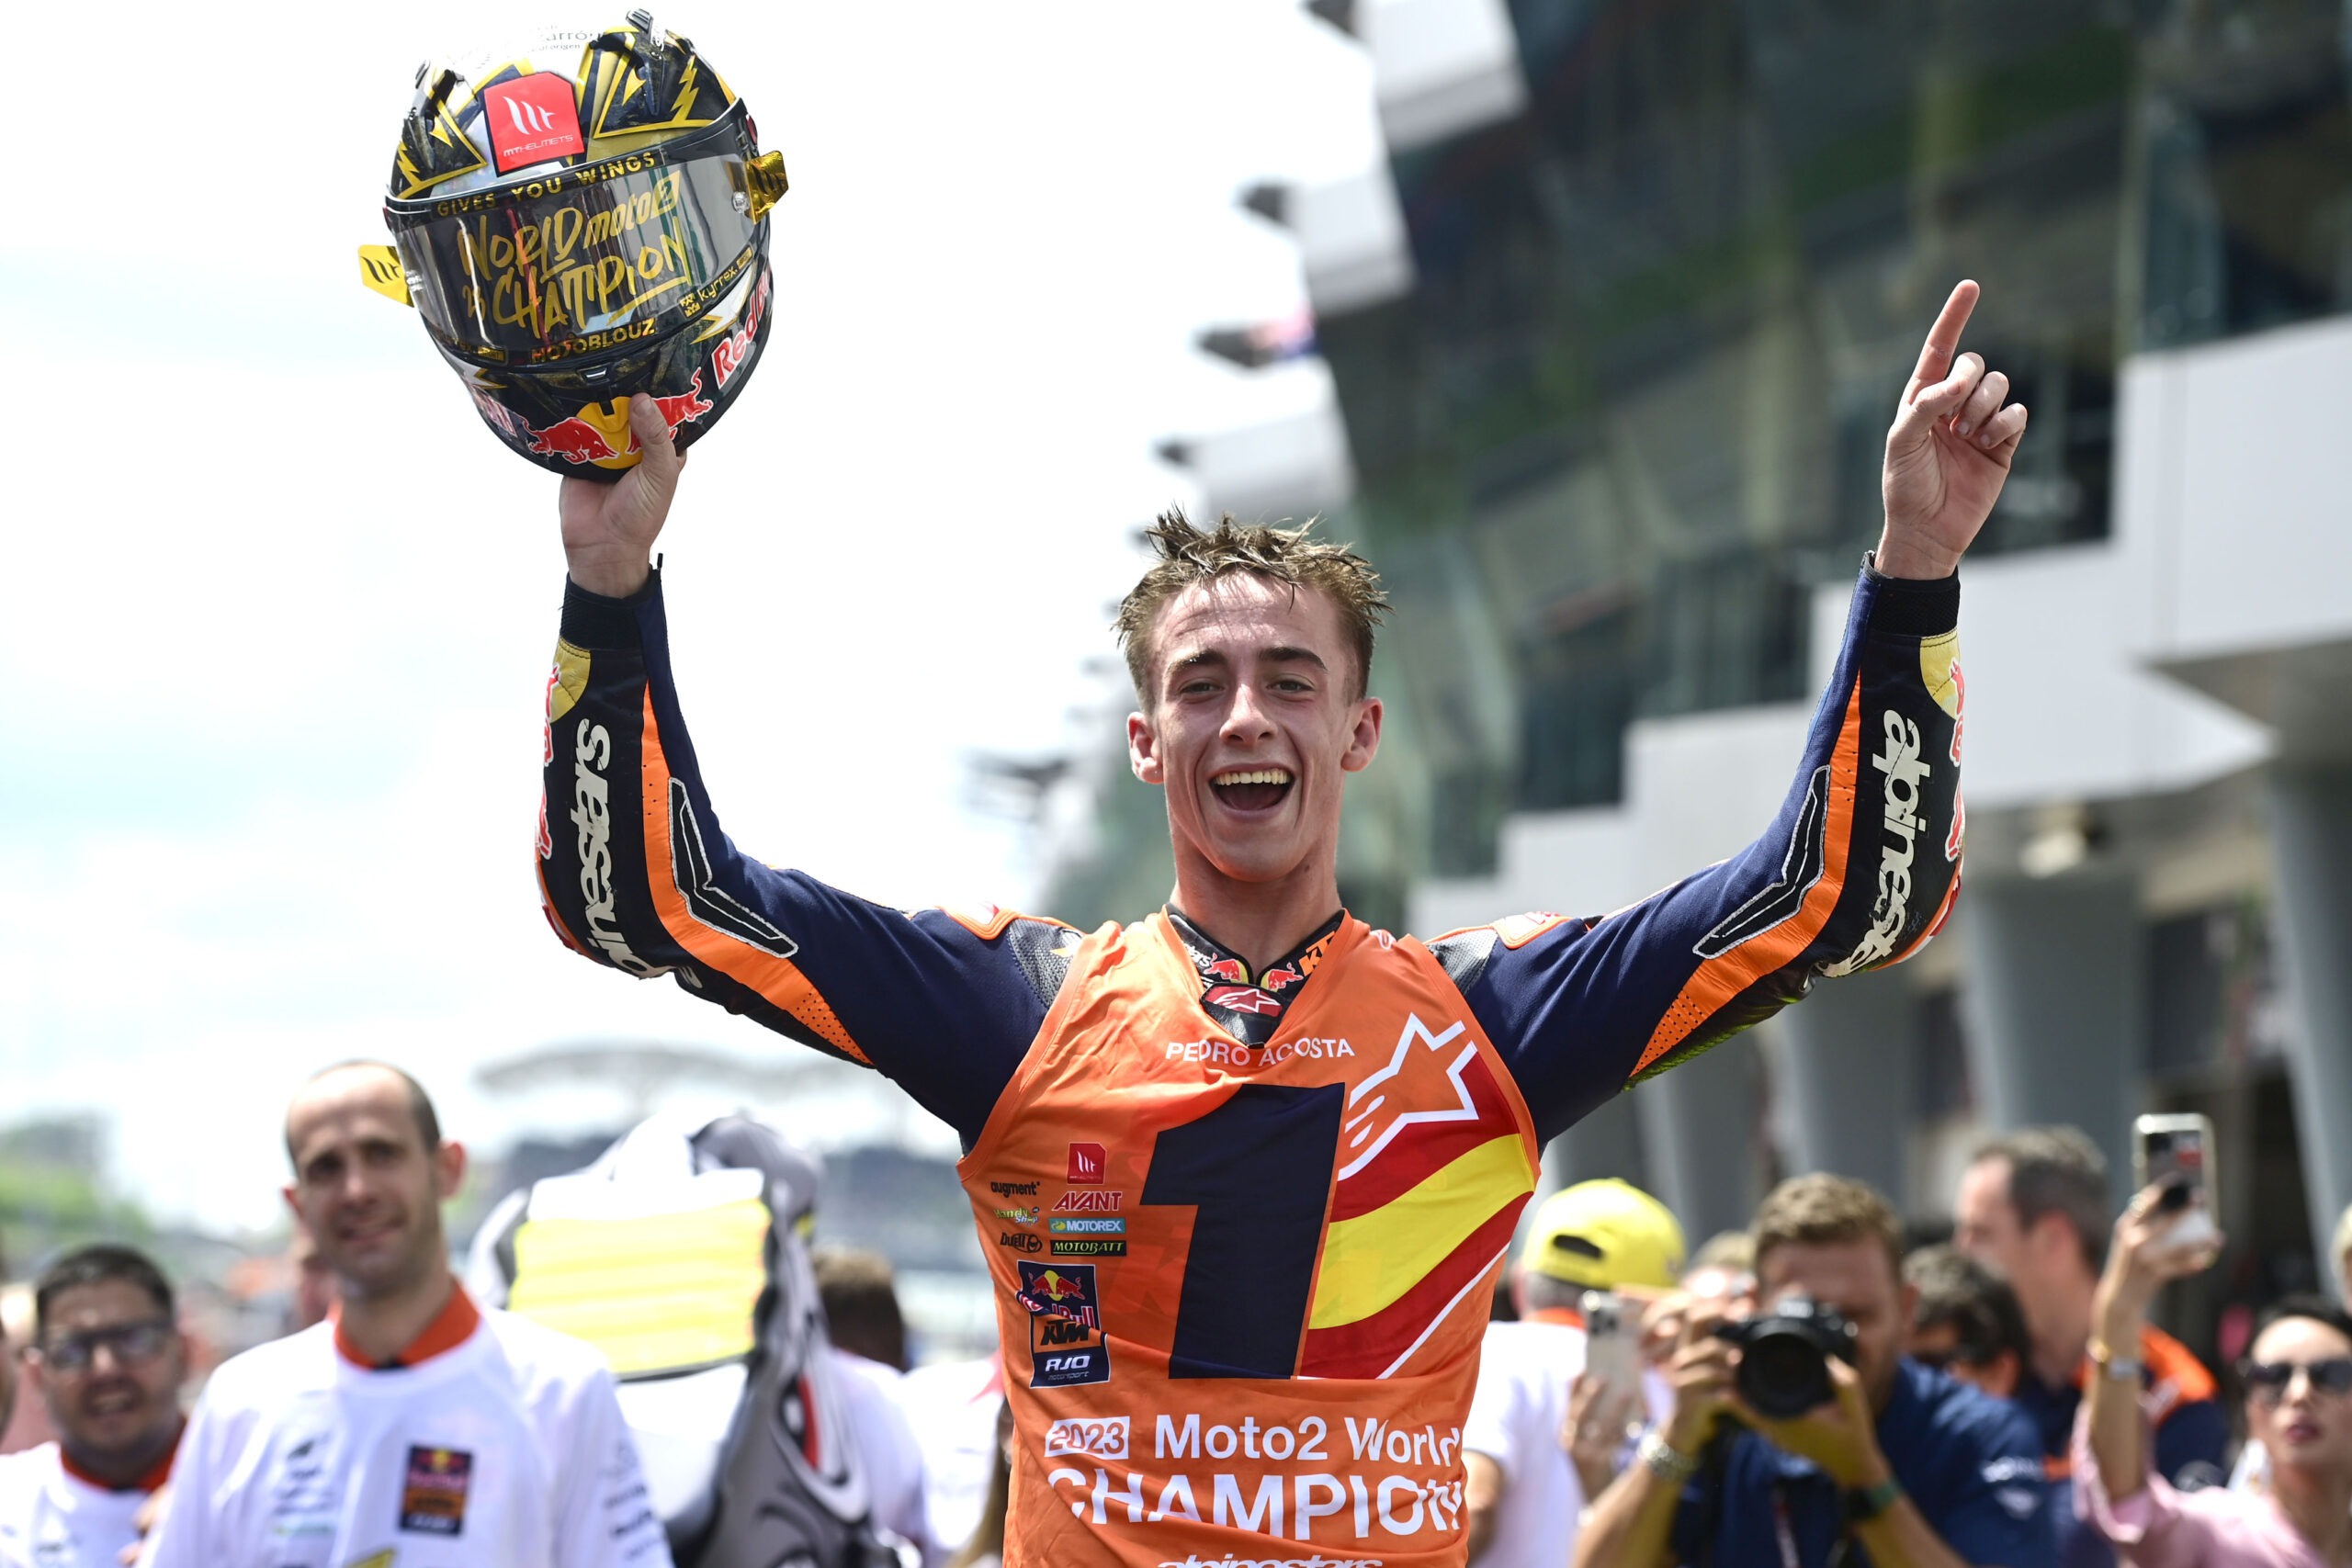 Pedro Acosta, pilote Motoblouz, fête son titre de Champion du monde Moto2 2023 casque à la main